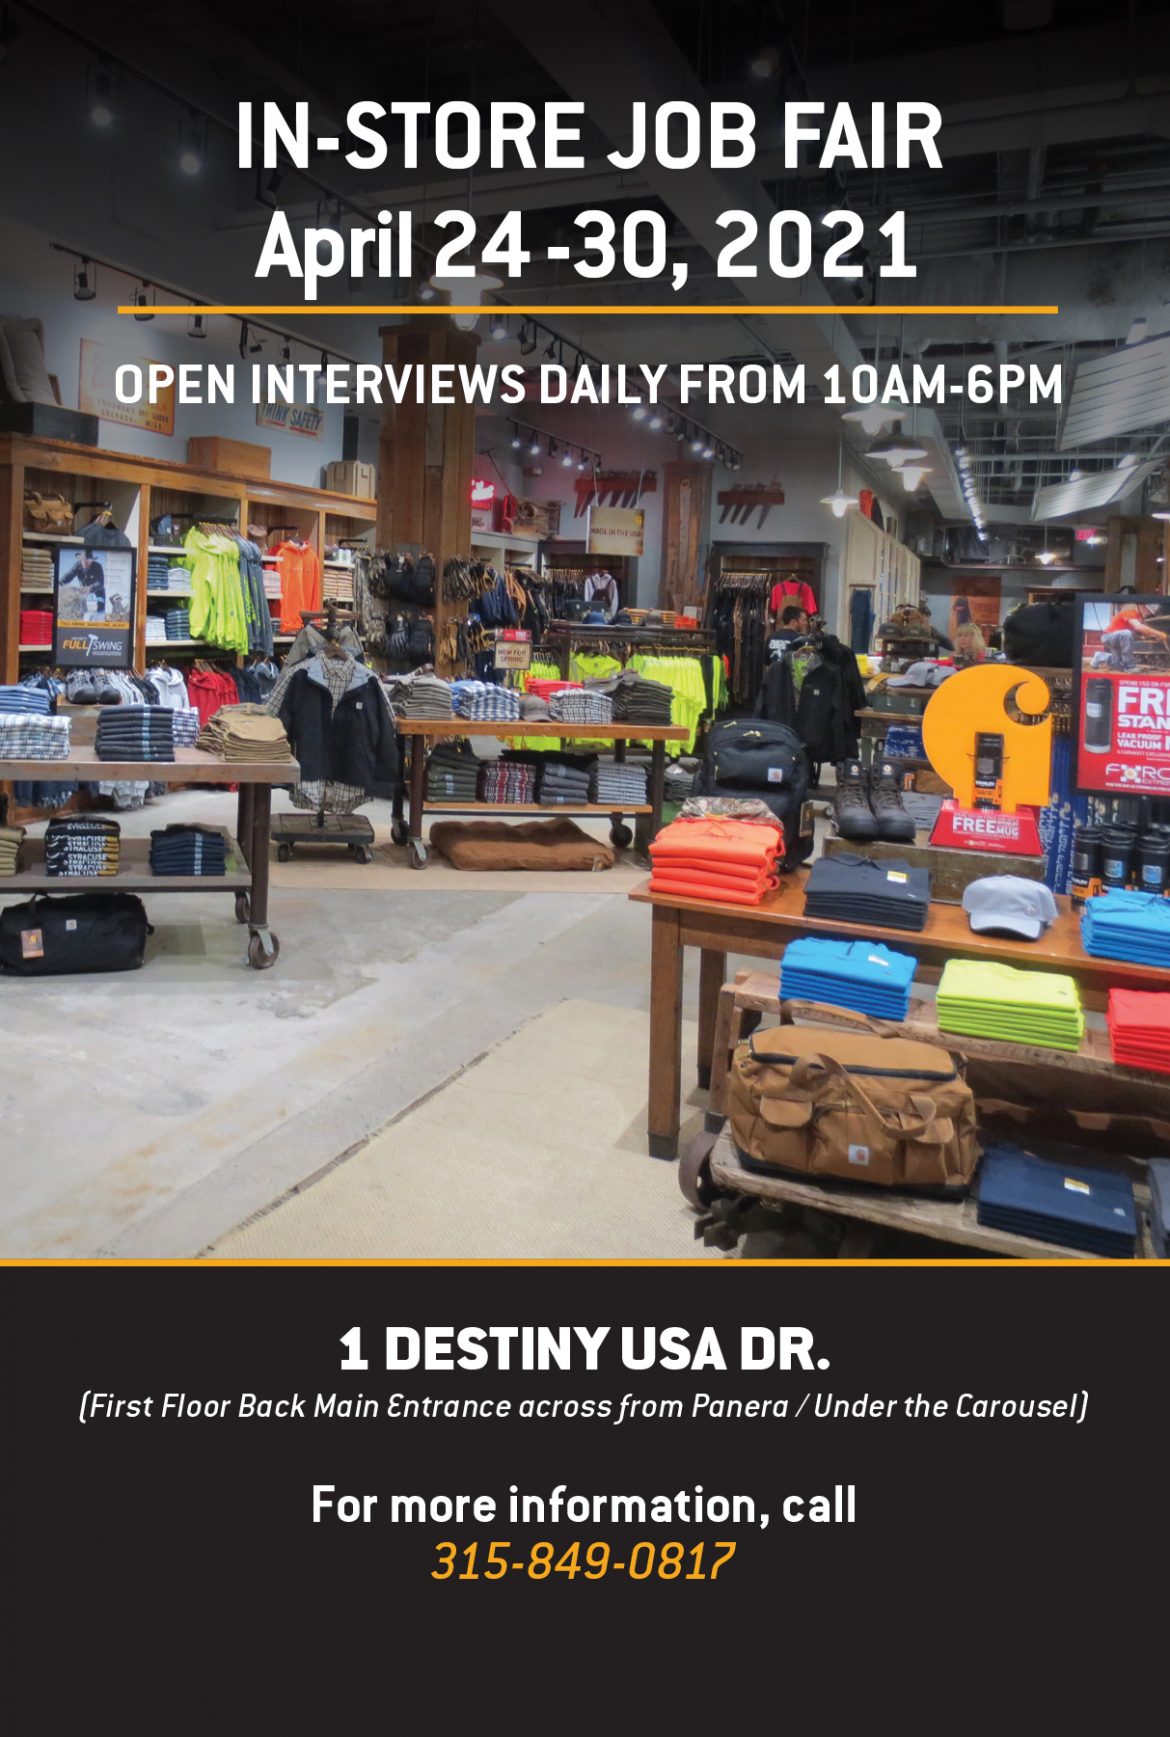 InStore Job Fair Destiny USA